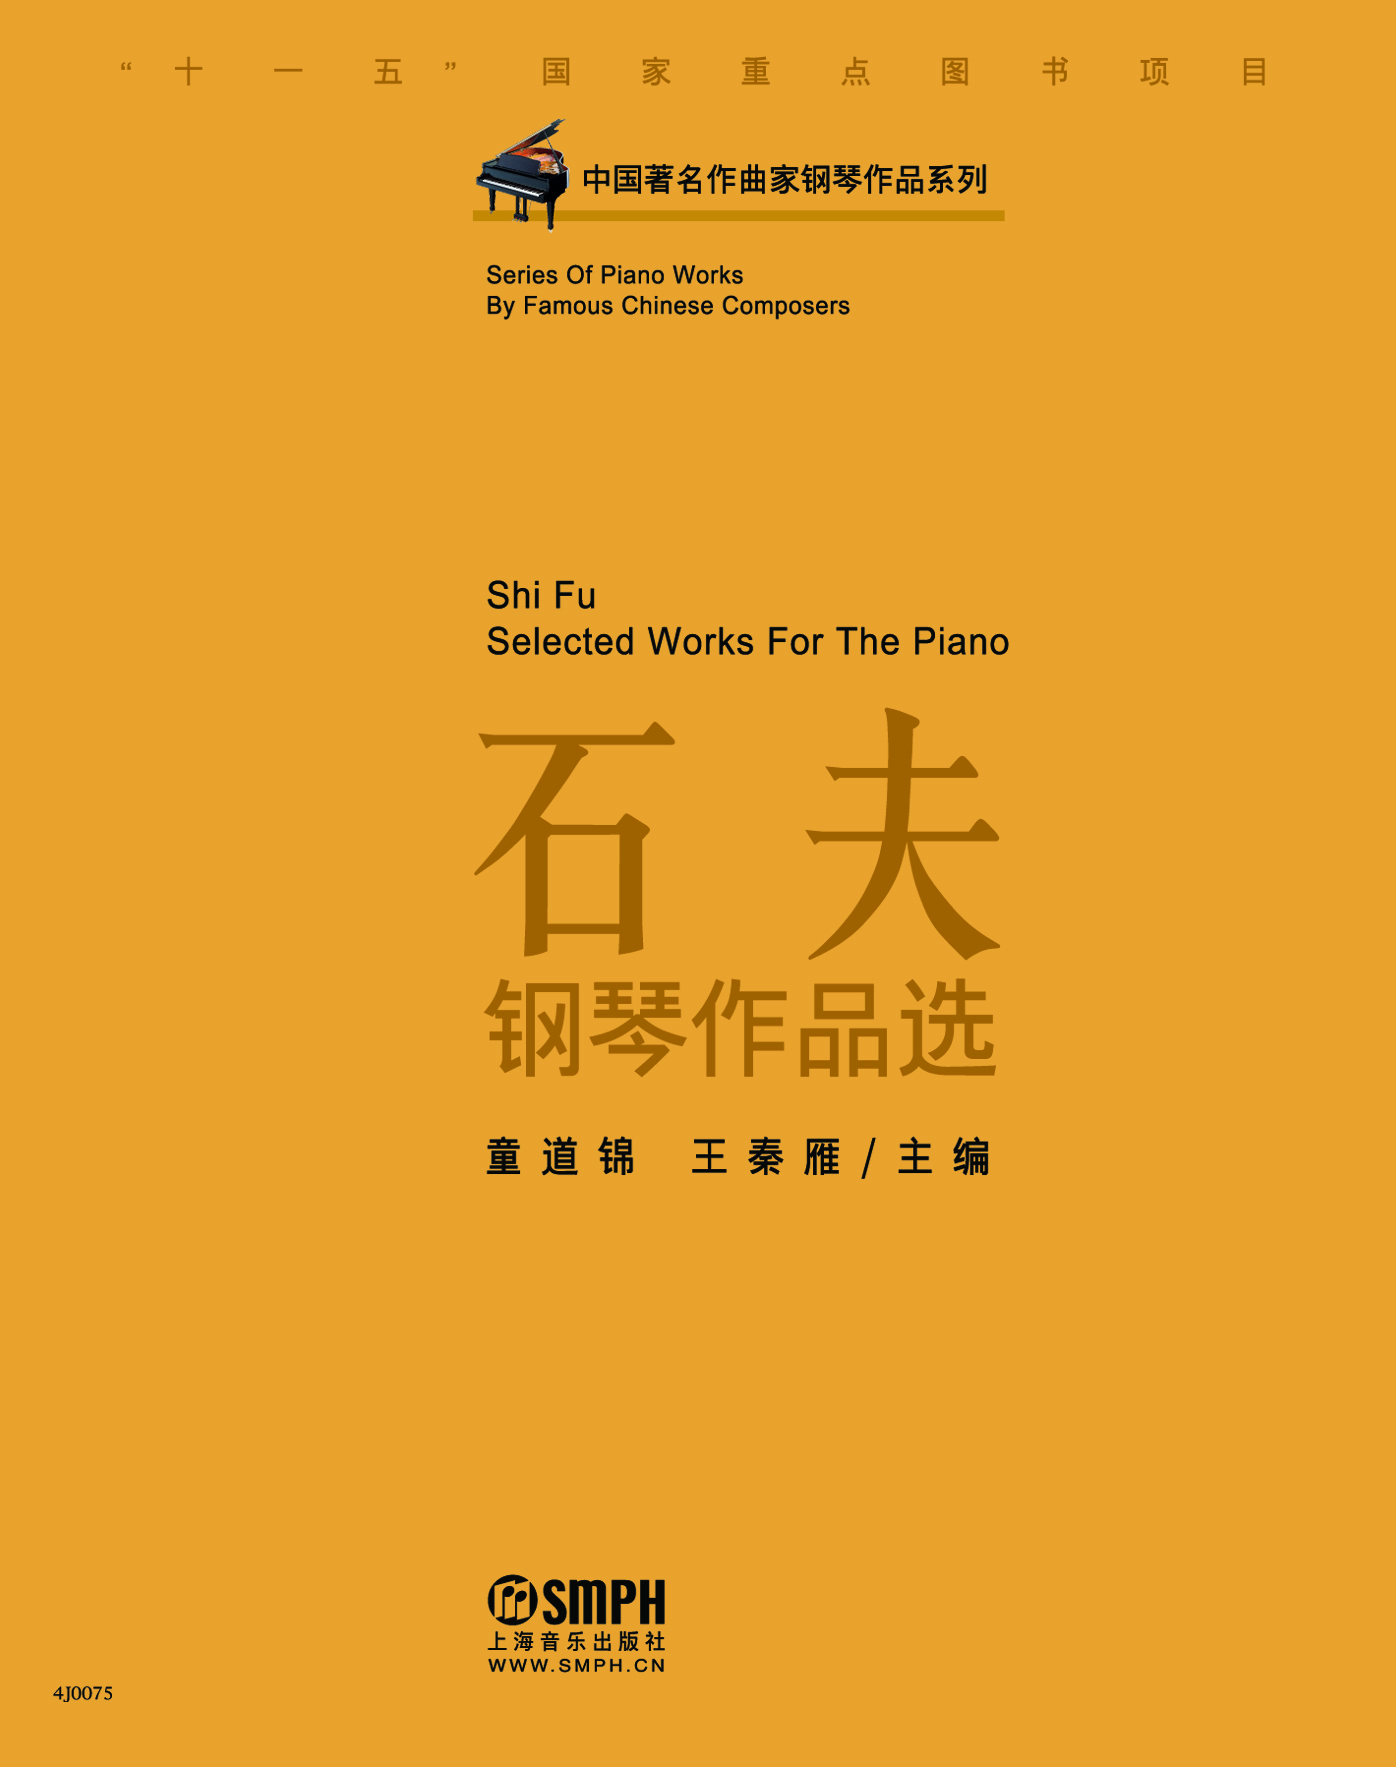 中國著名作曲家鋼琴作品系列-石夫